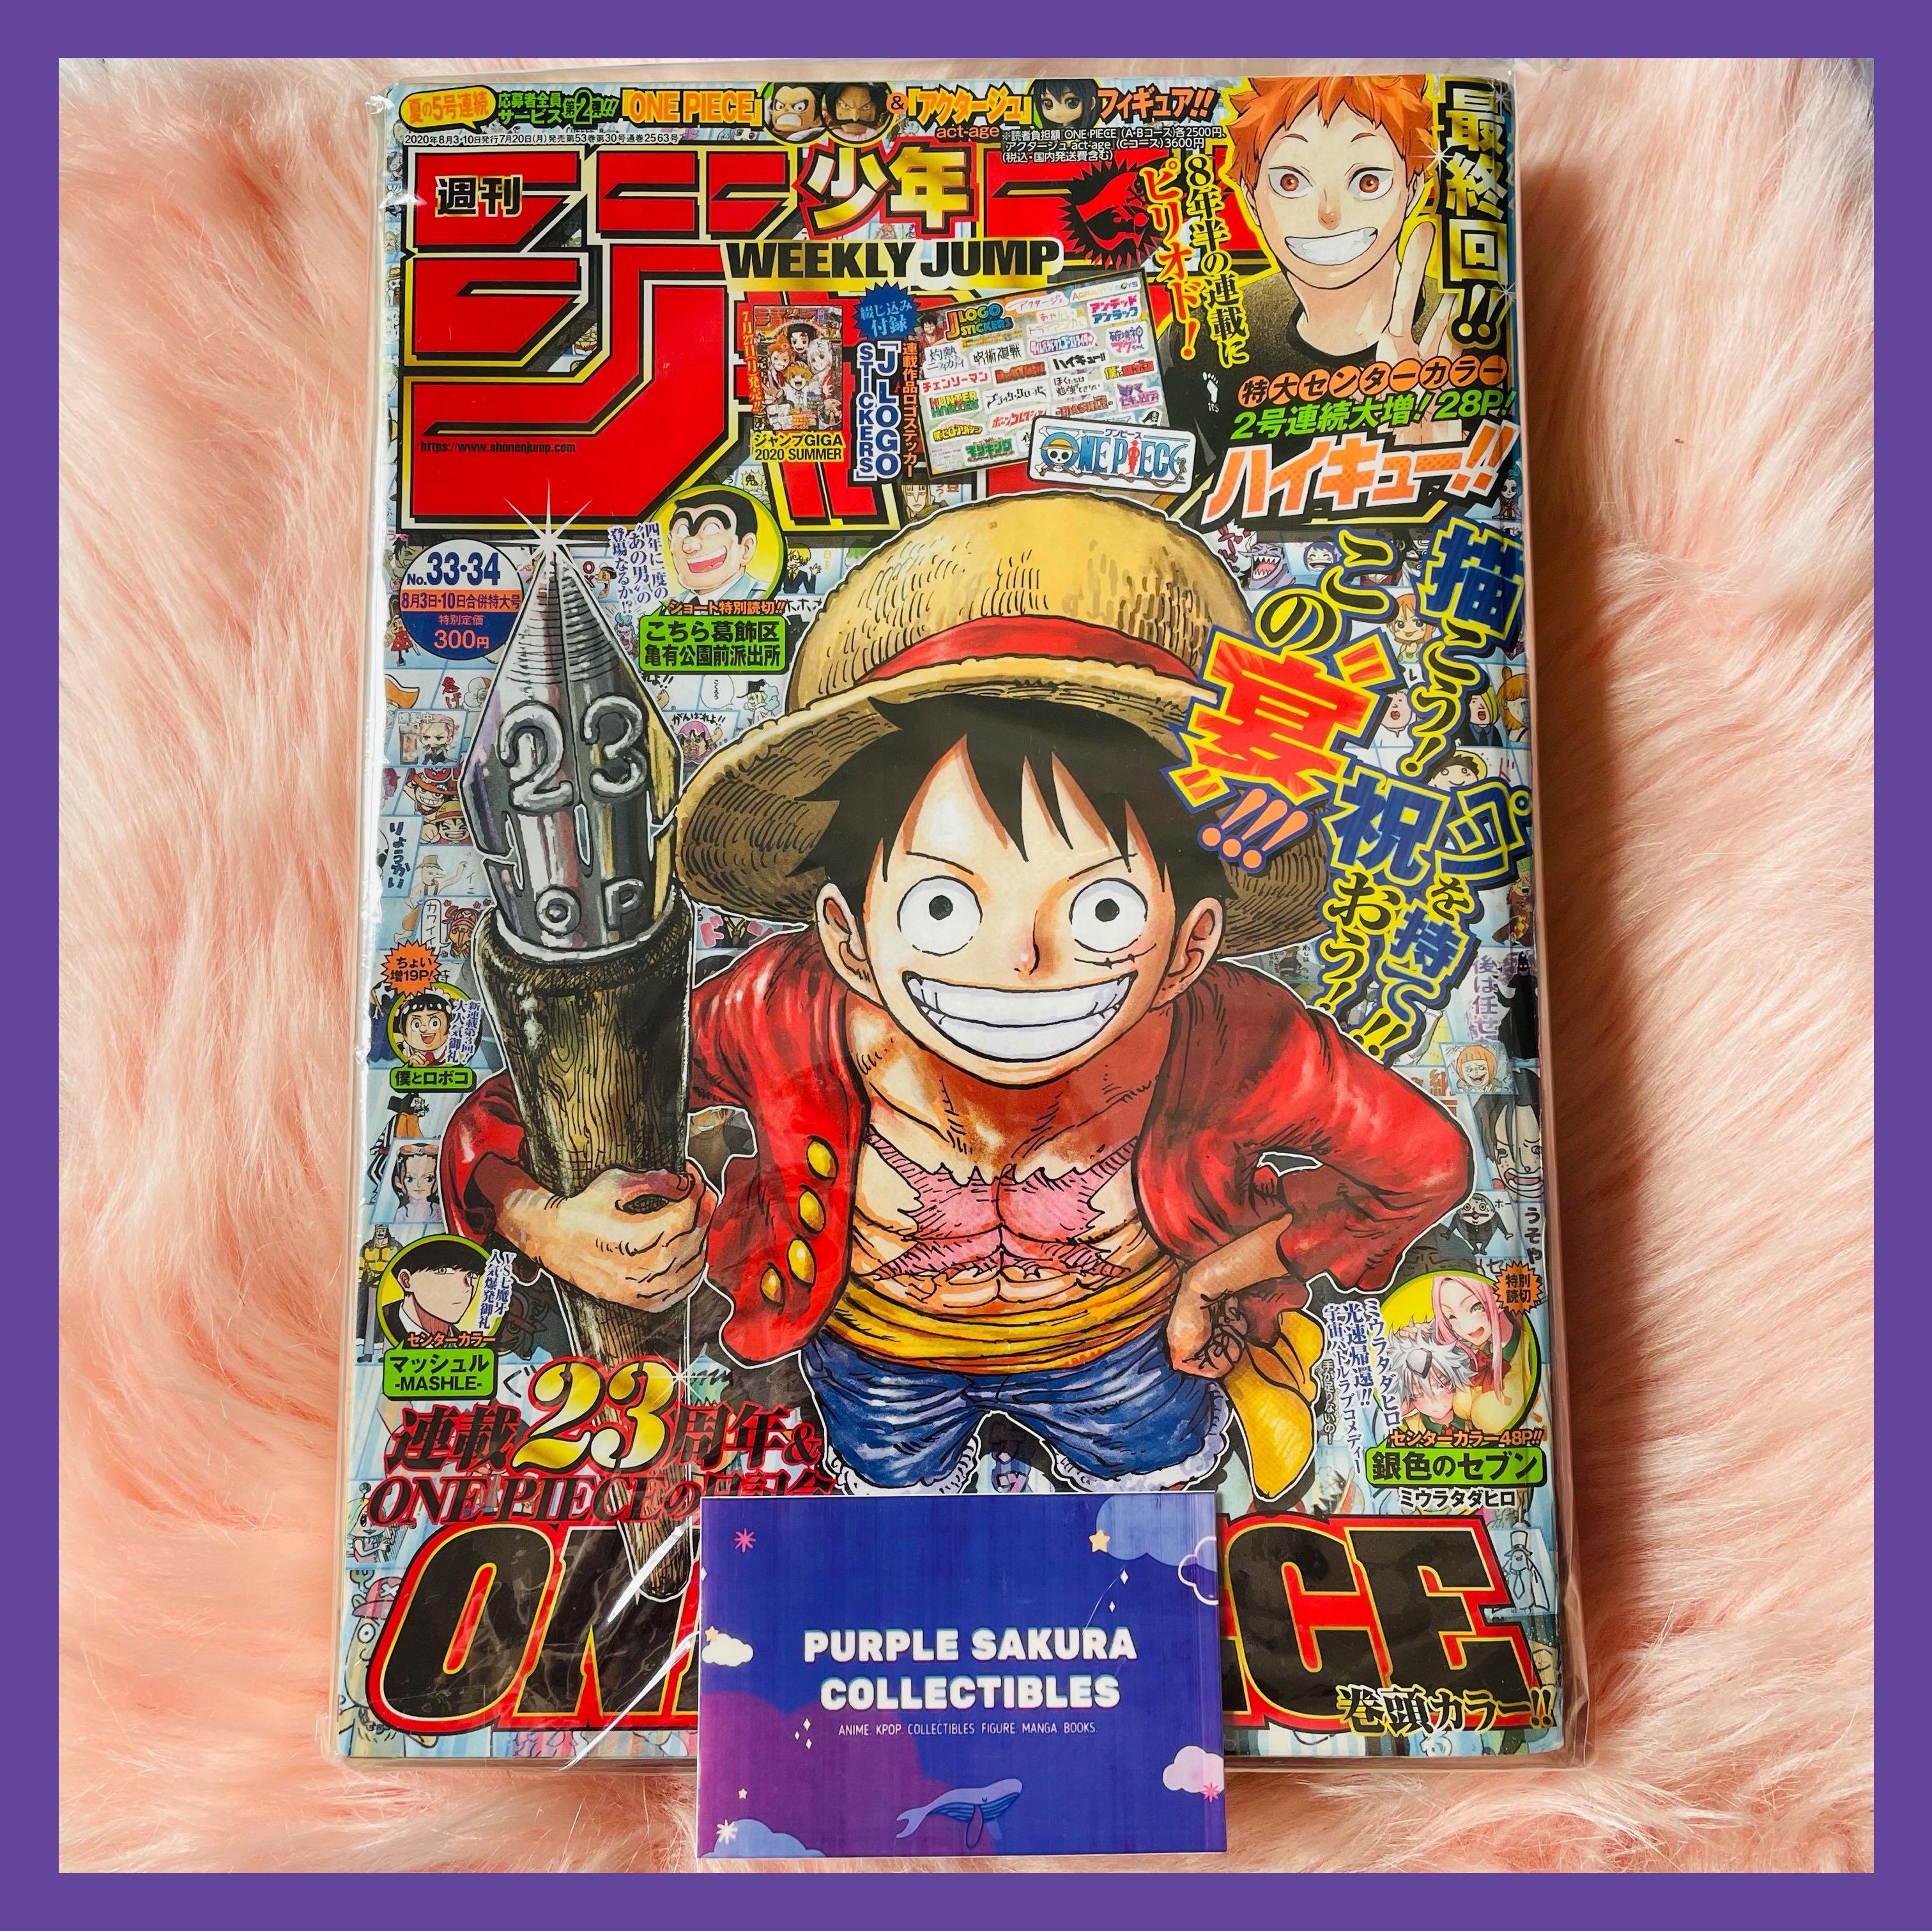 Weekly Shonen Jump One Piece Cover Haikyuu Jujutsu Kaisen Hobbies Toys Books Magazines Comics Manga On Carousell